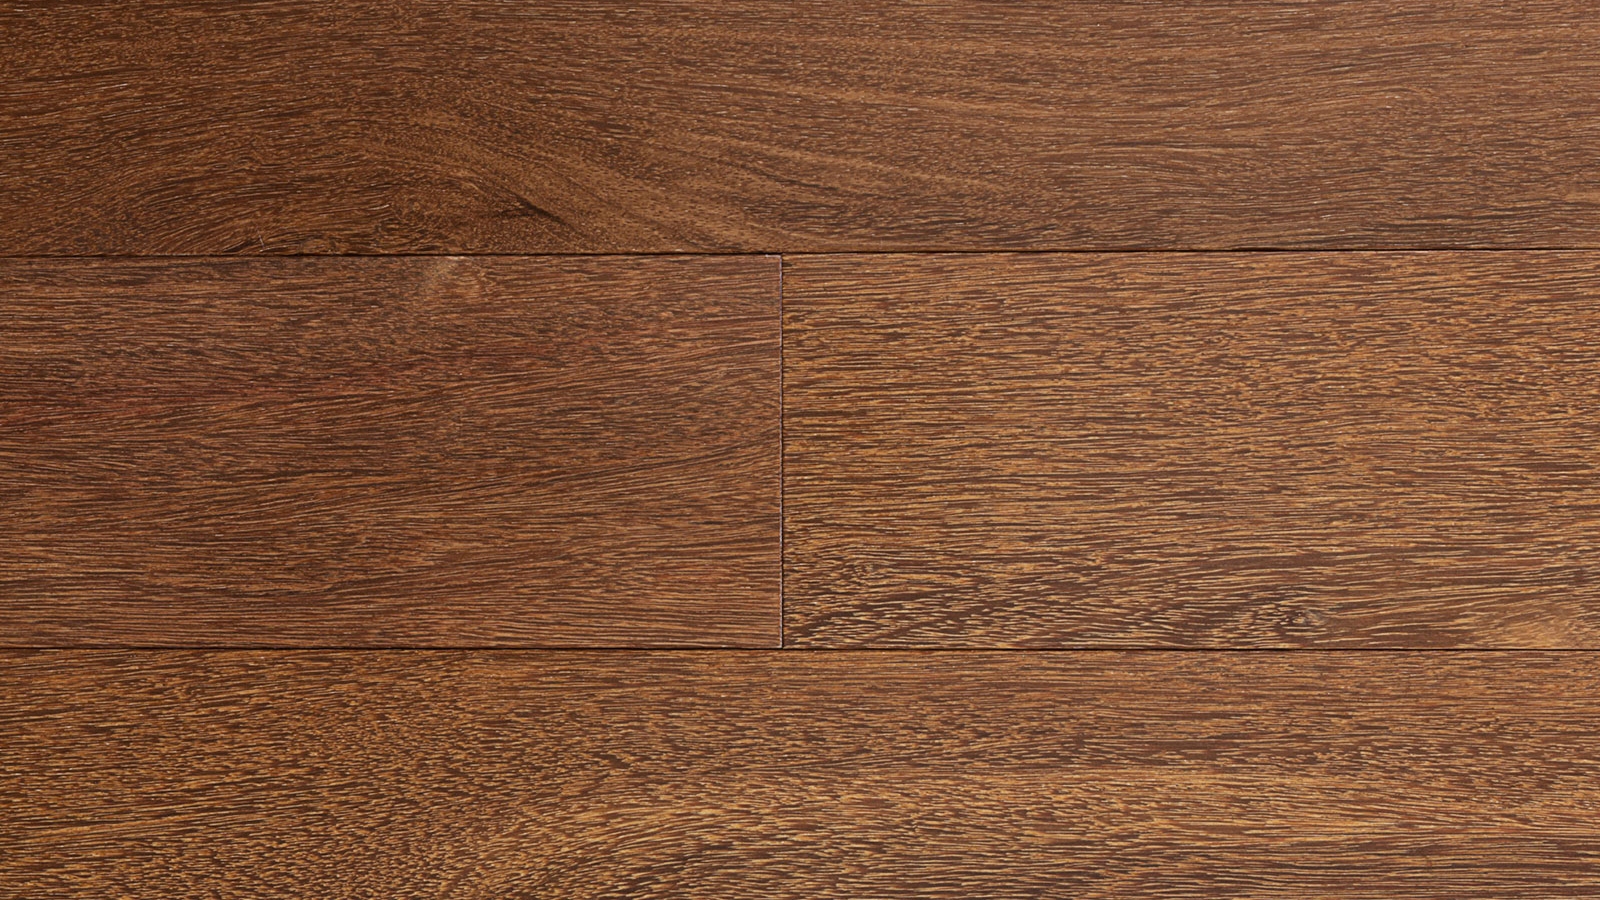 Brazilian Chestnut Indusparquet 50, Hardwood Flooring Chestnut